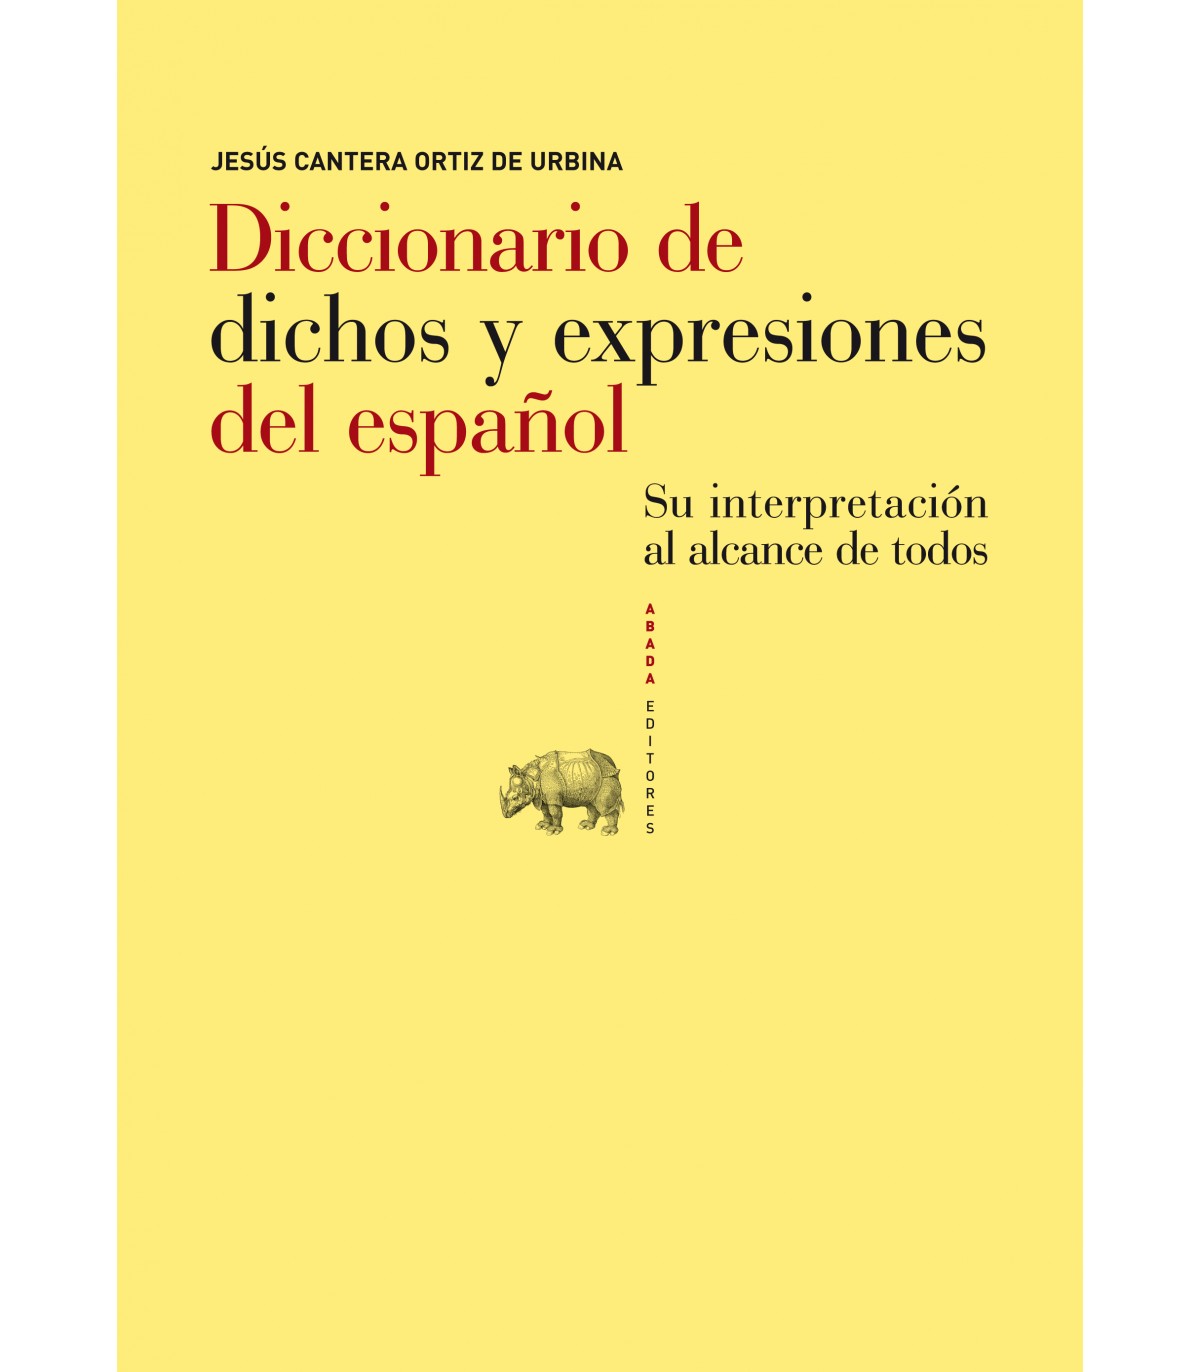 Imagen de portada del libro Diccionario de dichos y expresiones del español